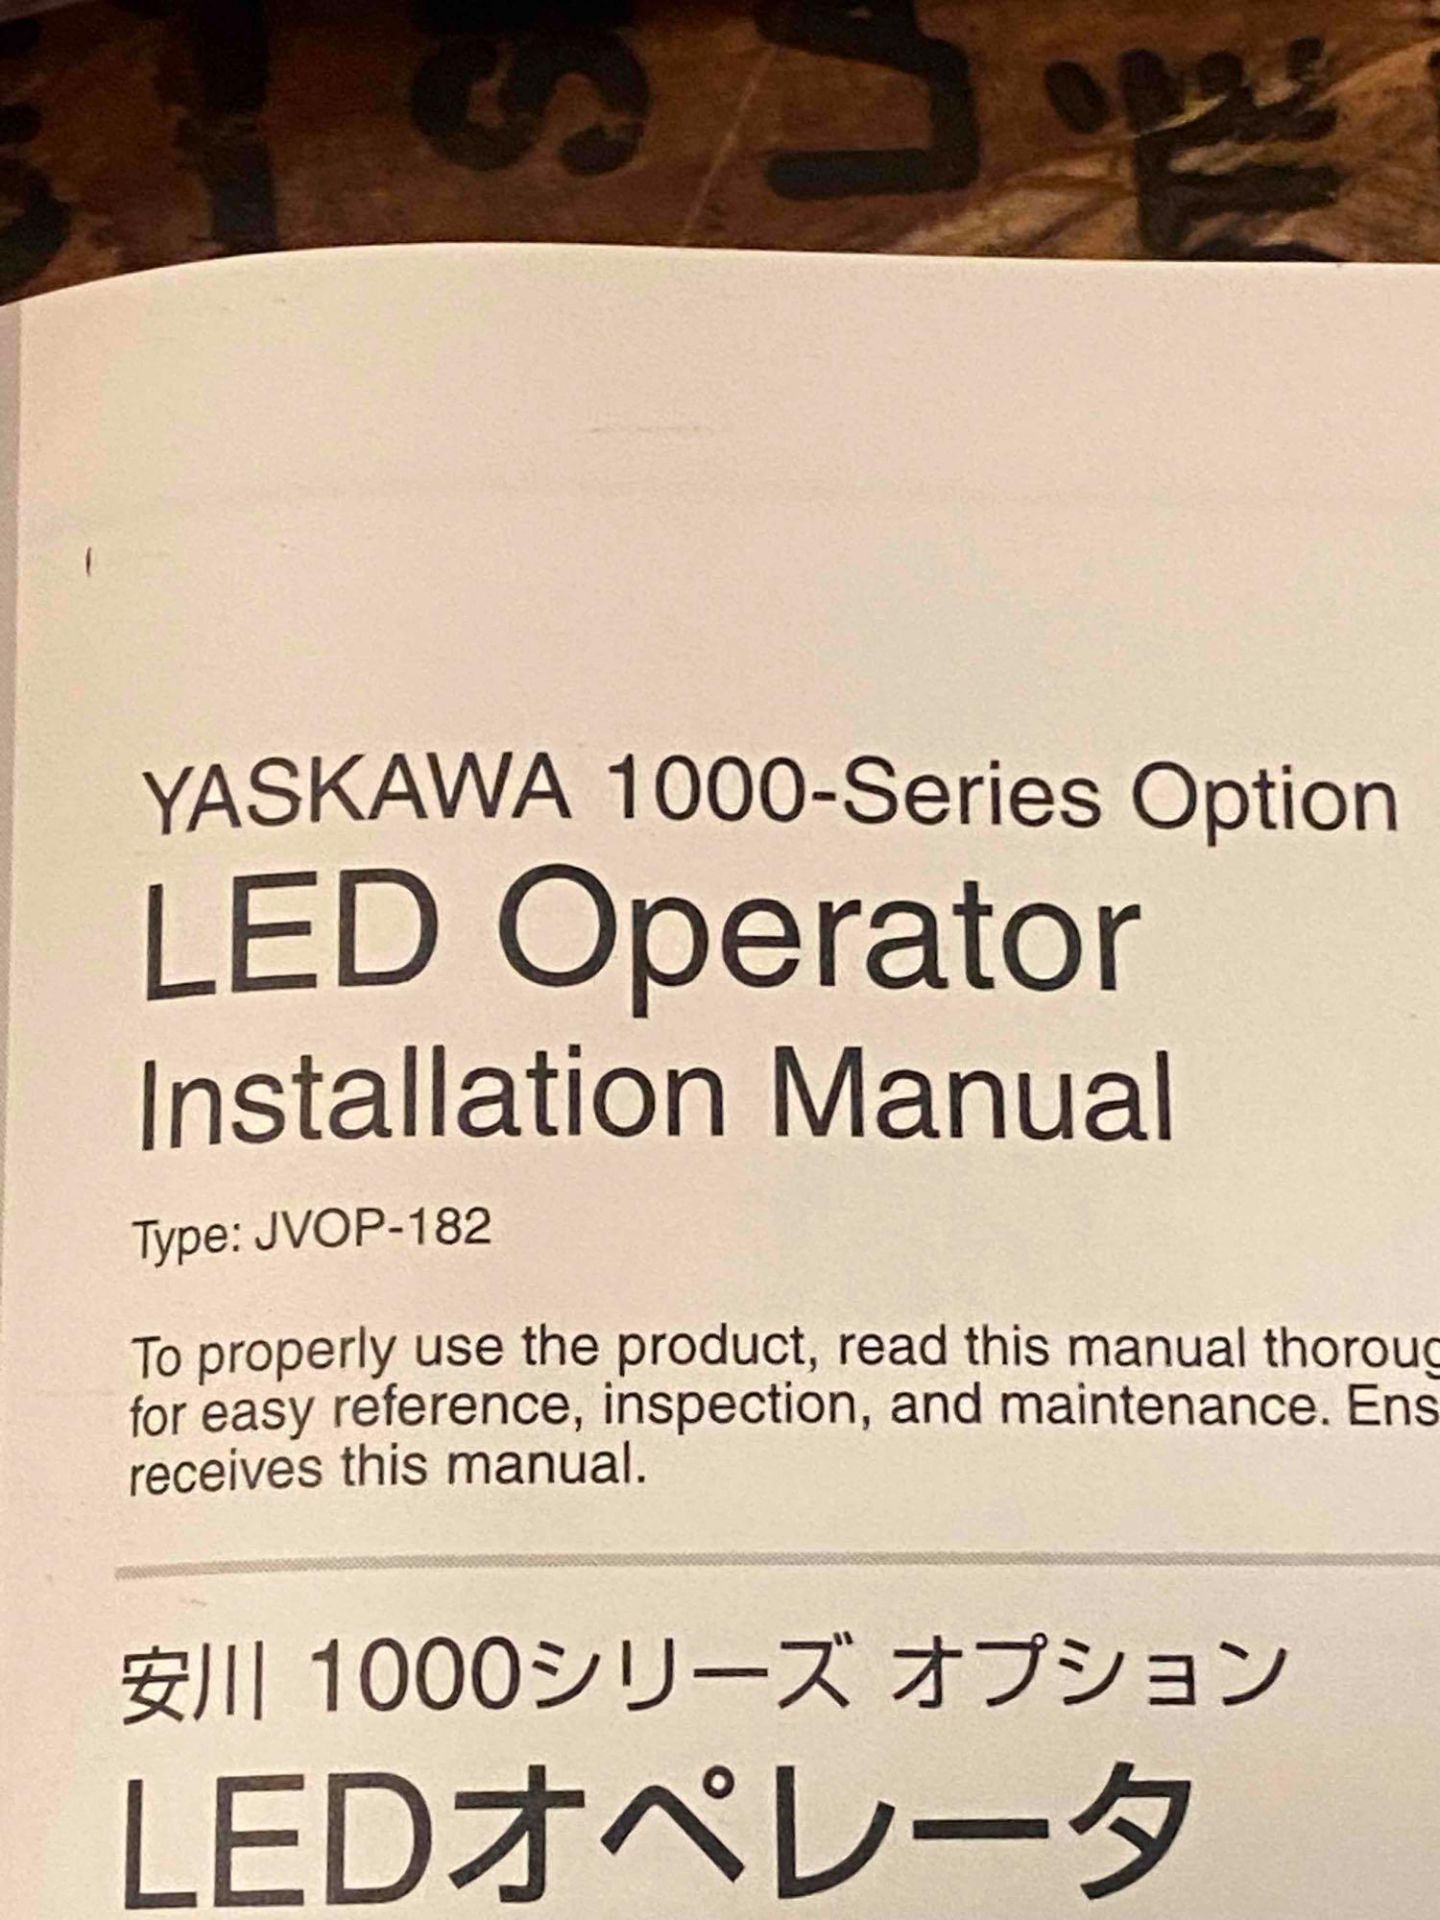 Yaskawa 1000 Series Inverter - Image 2 of 4